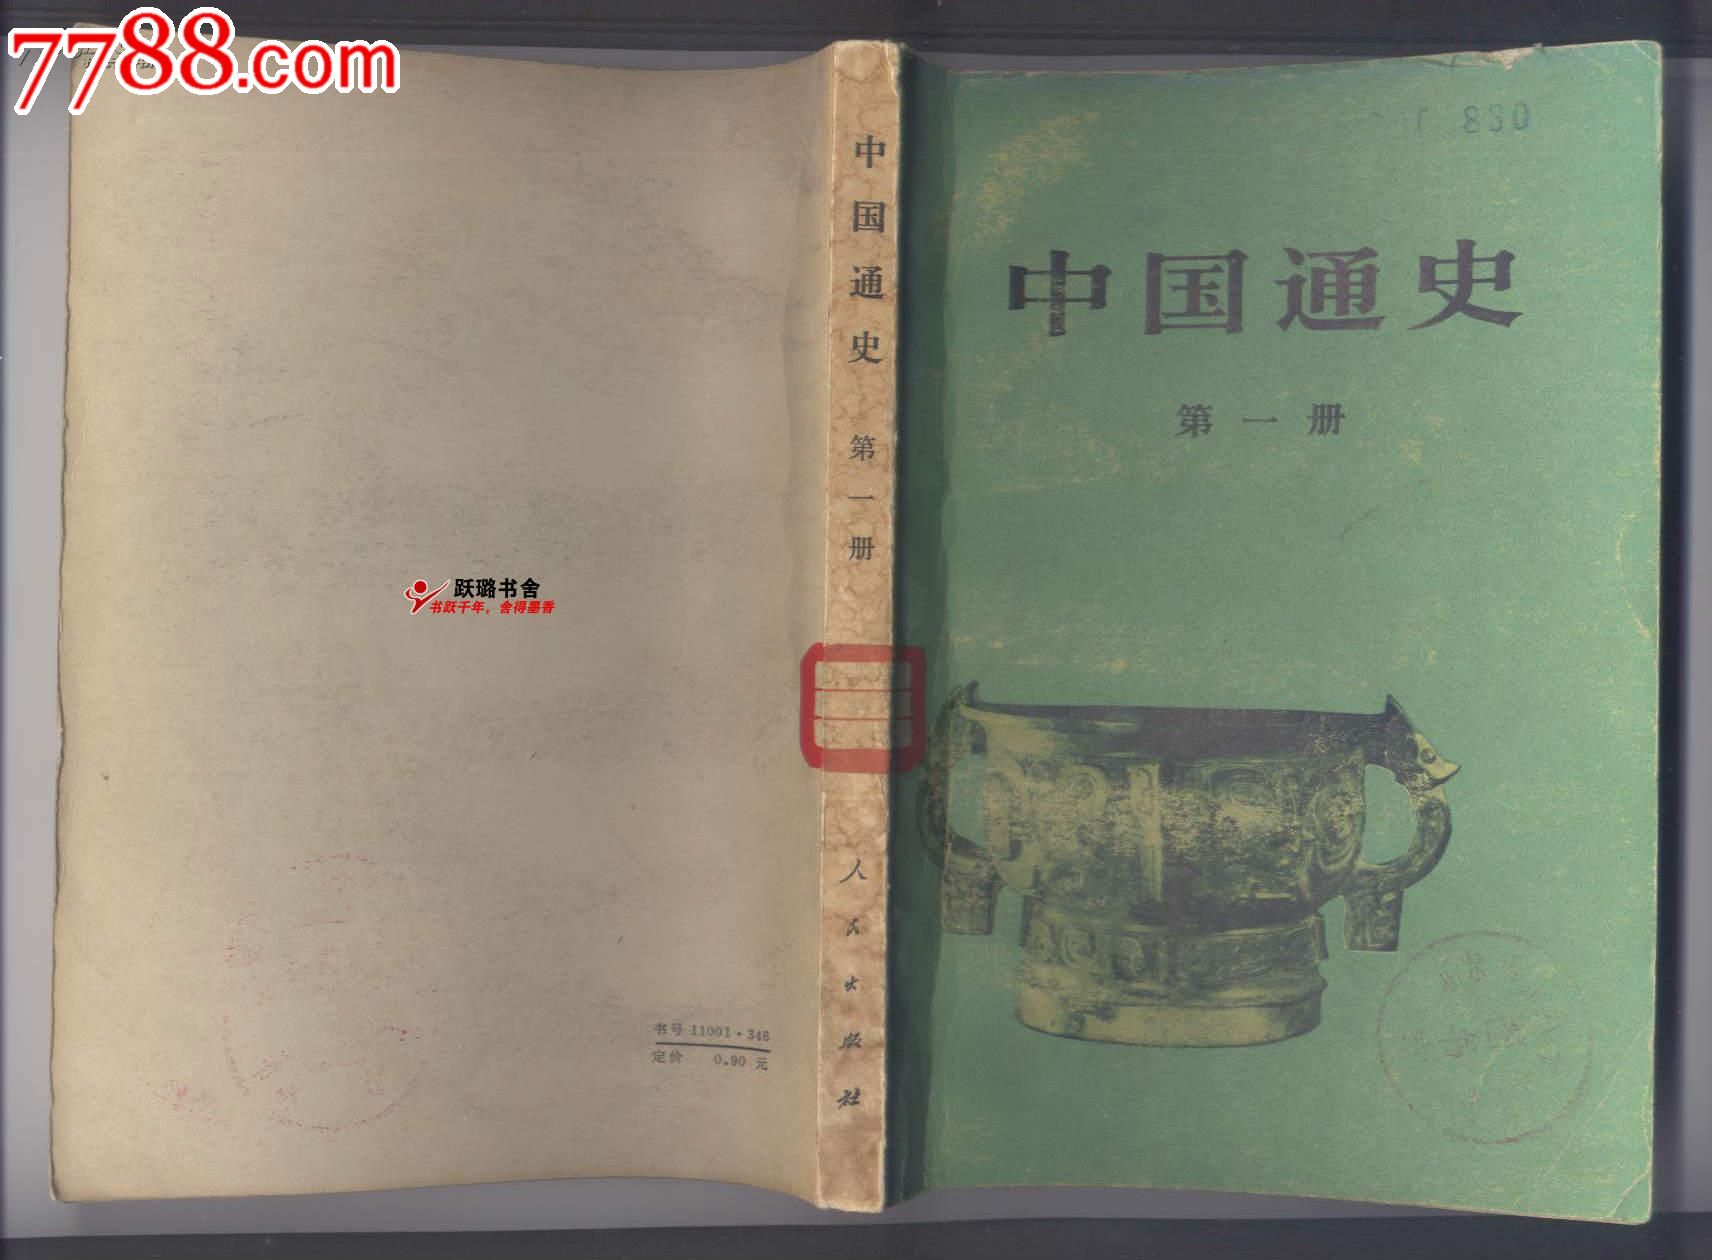 《中国通史·第一册》(1978年出版/范文澜著/附珍贵彩色插图24幅)